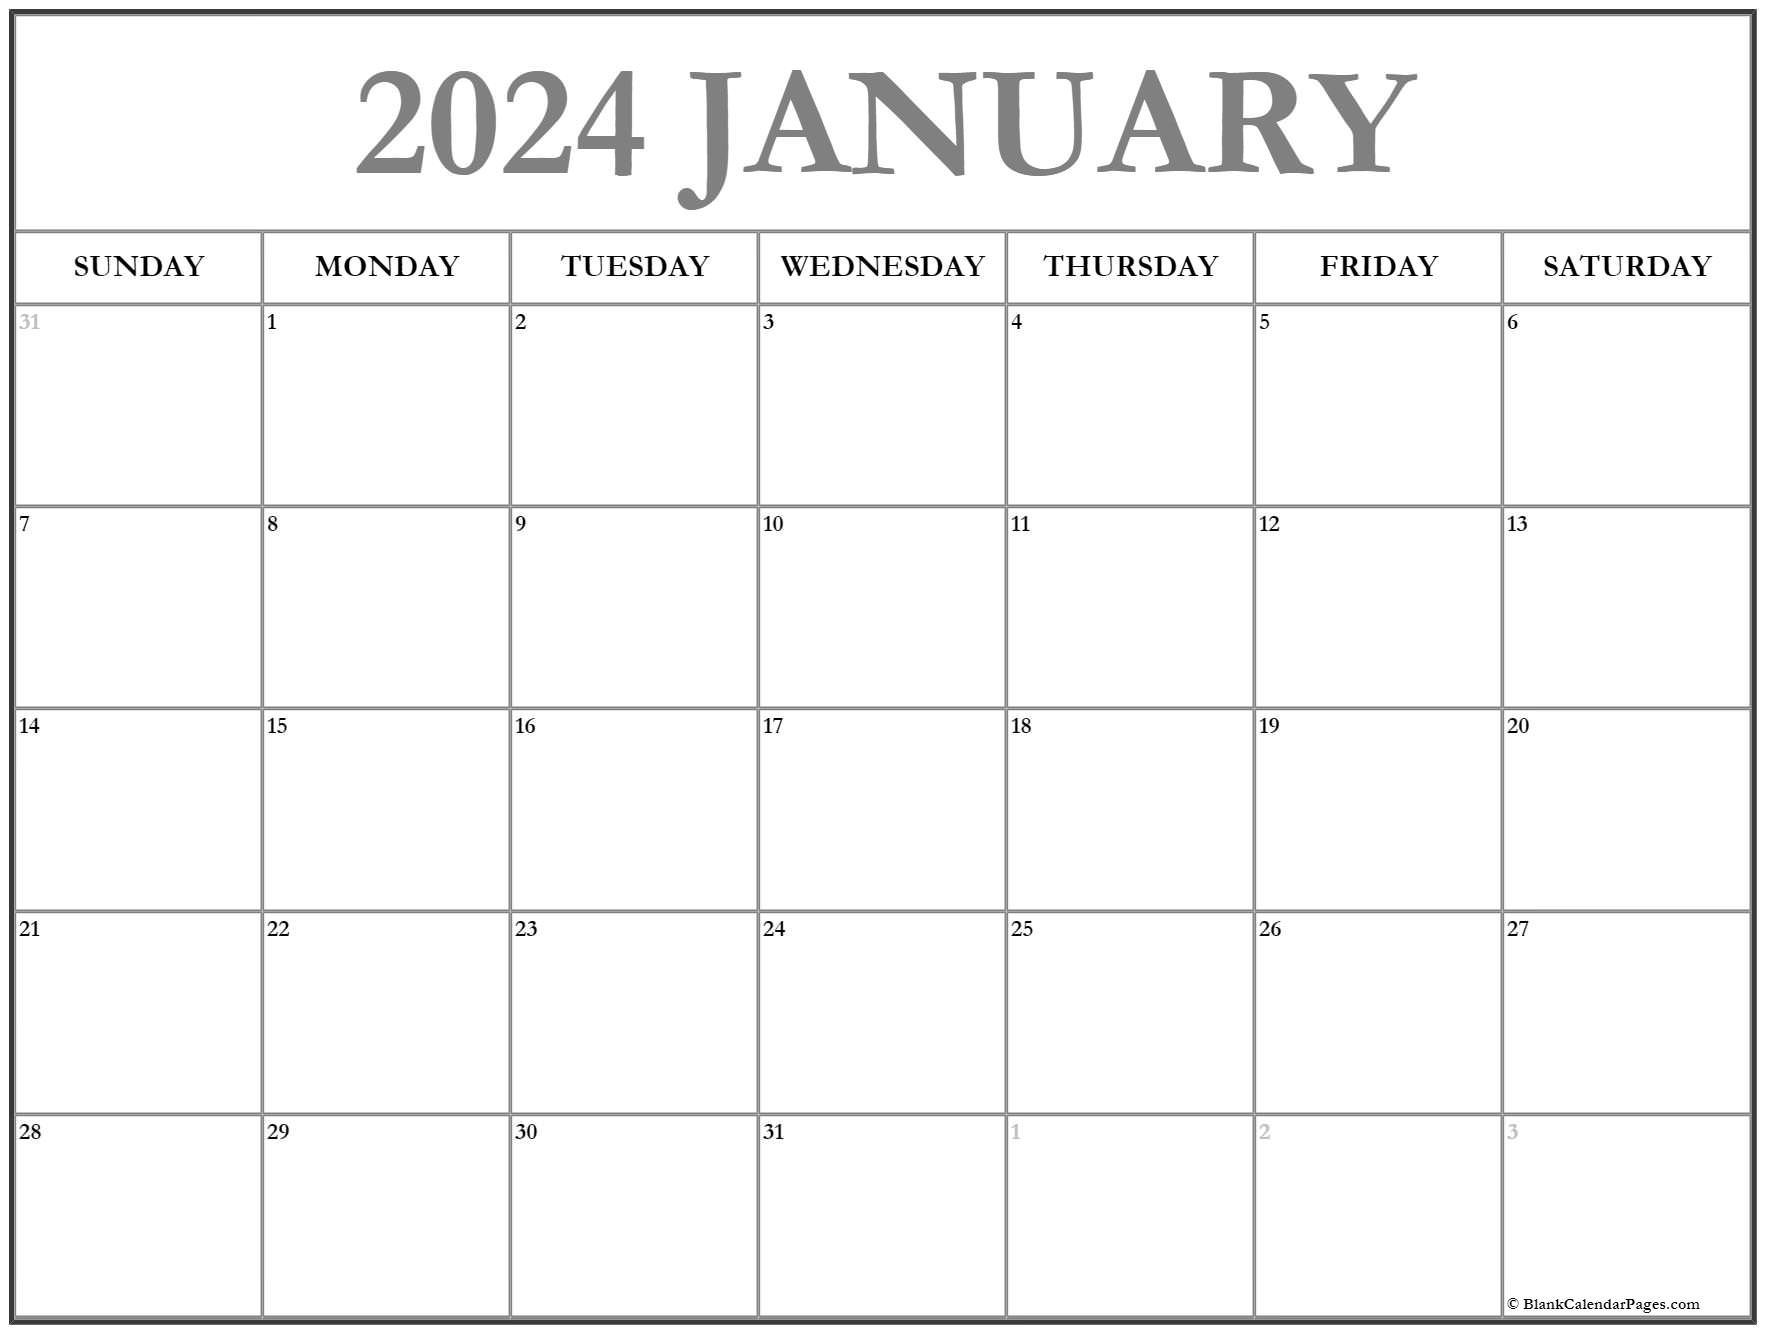 january-2024-table-calendar-new-the-best-list-of-january-2024-calendar-blank